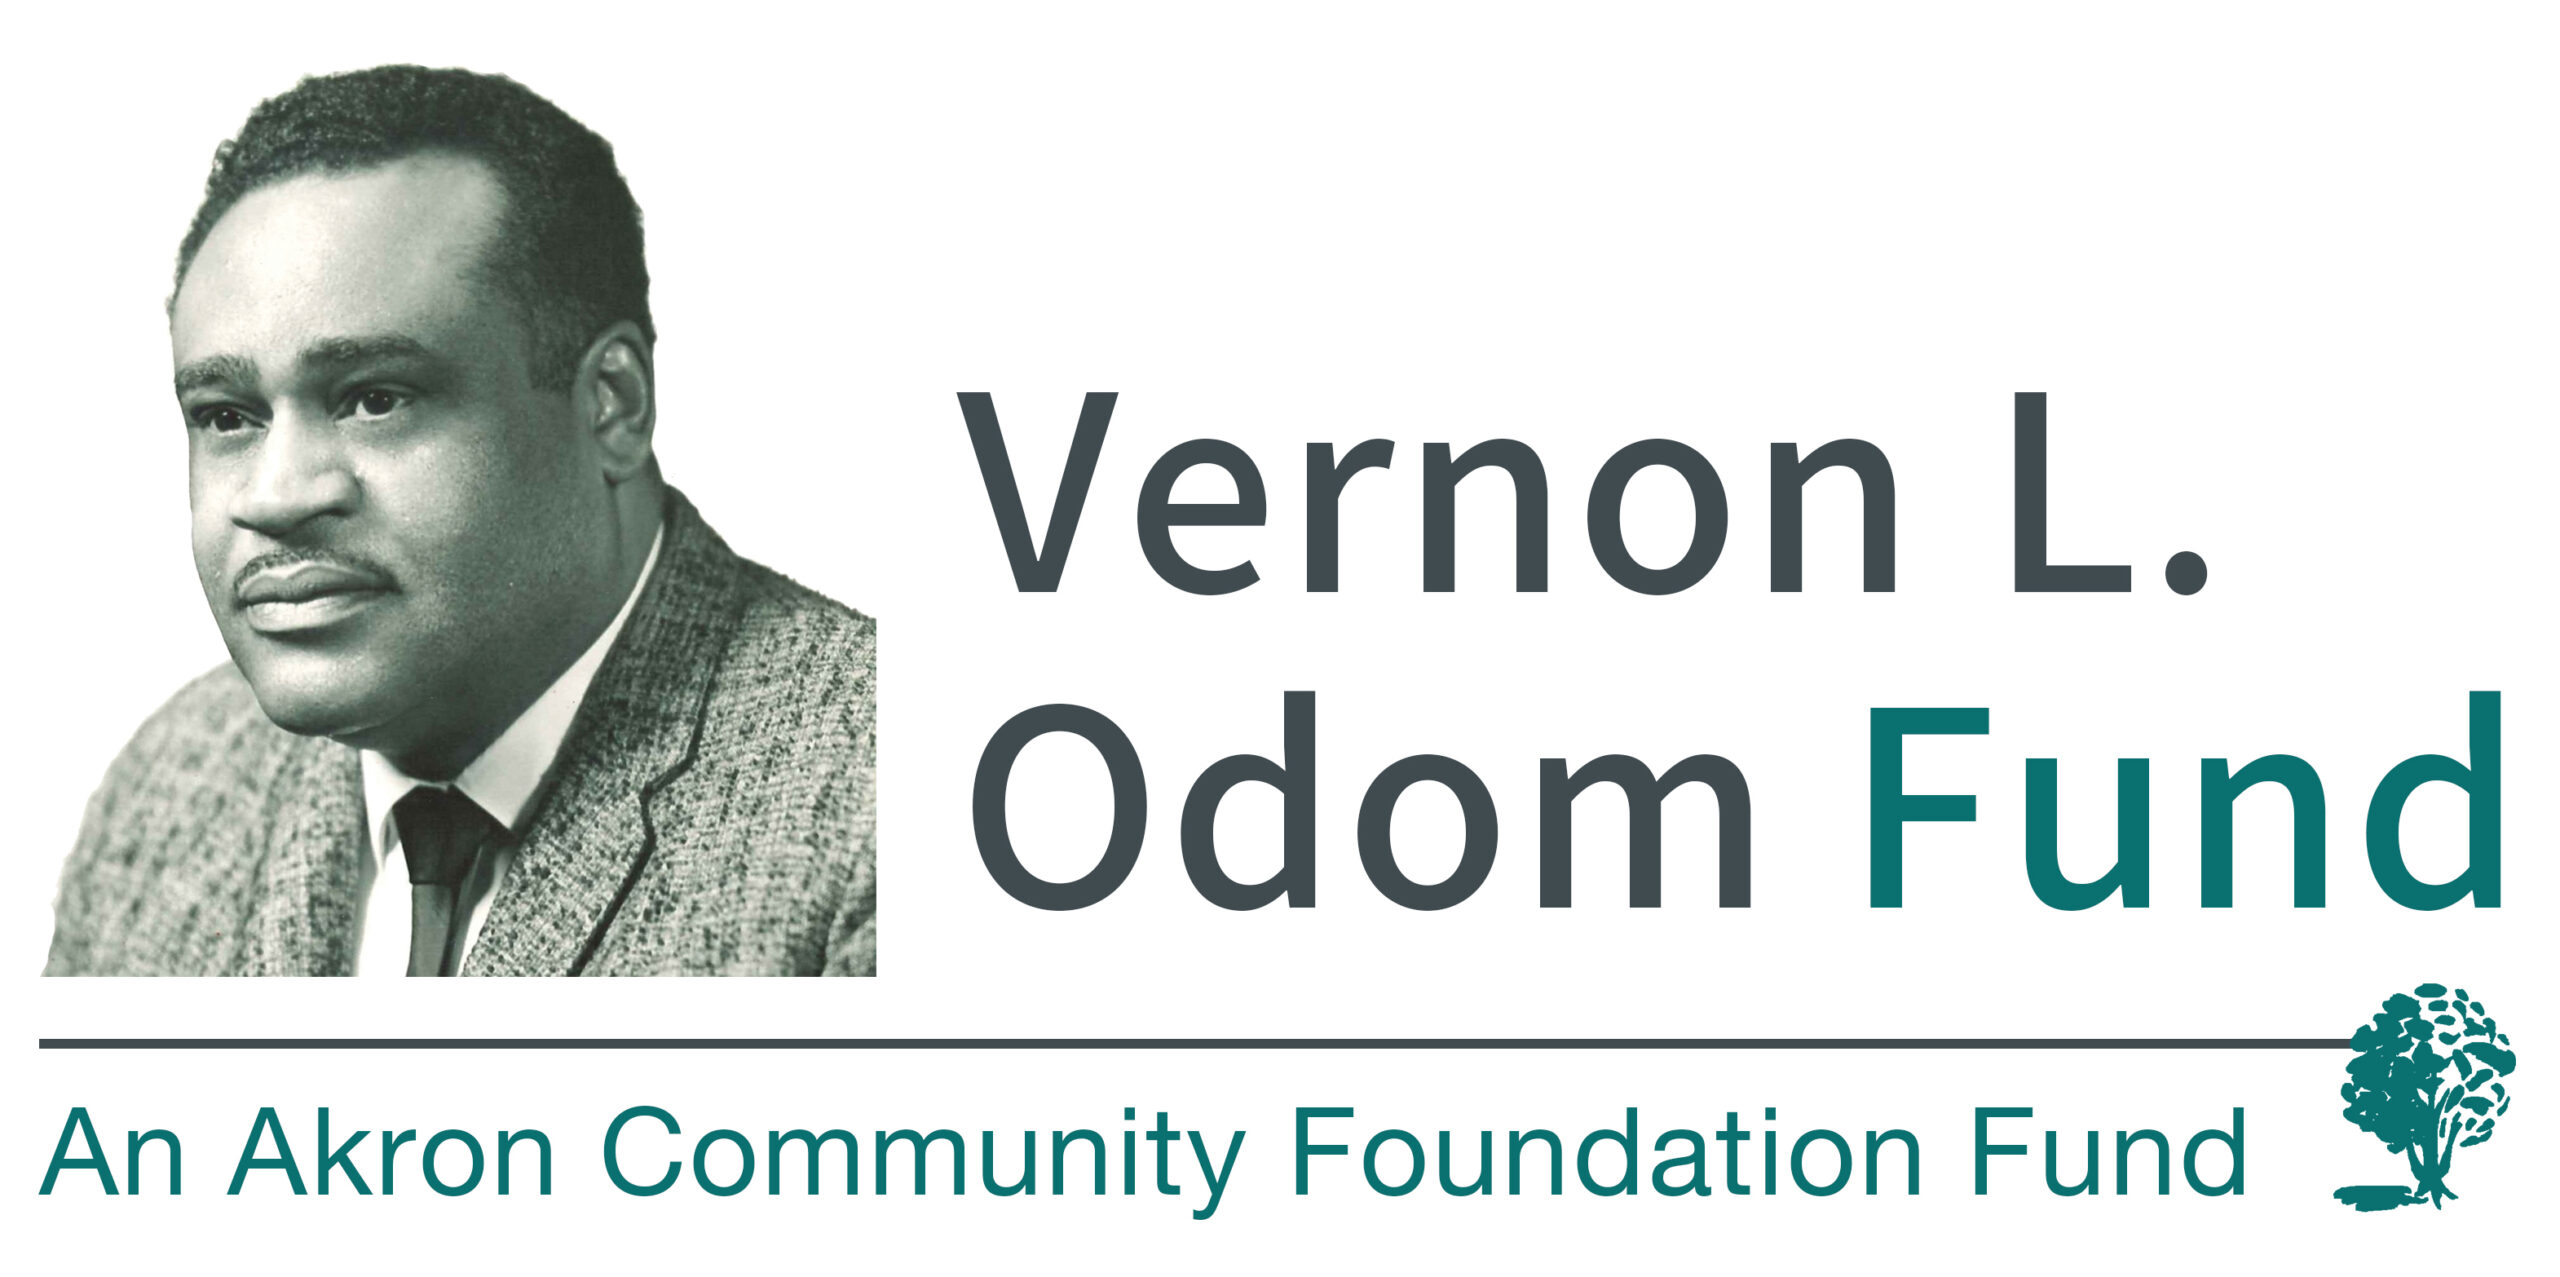 Vernon L. Odom Fund announces 2021 grants